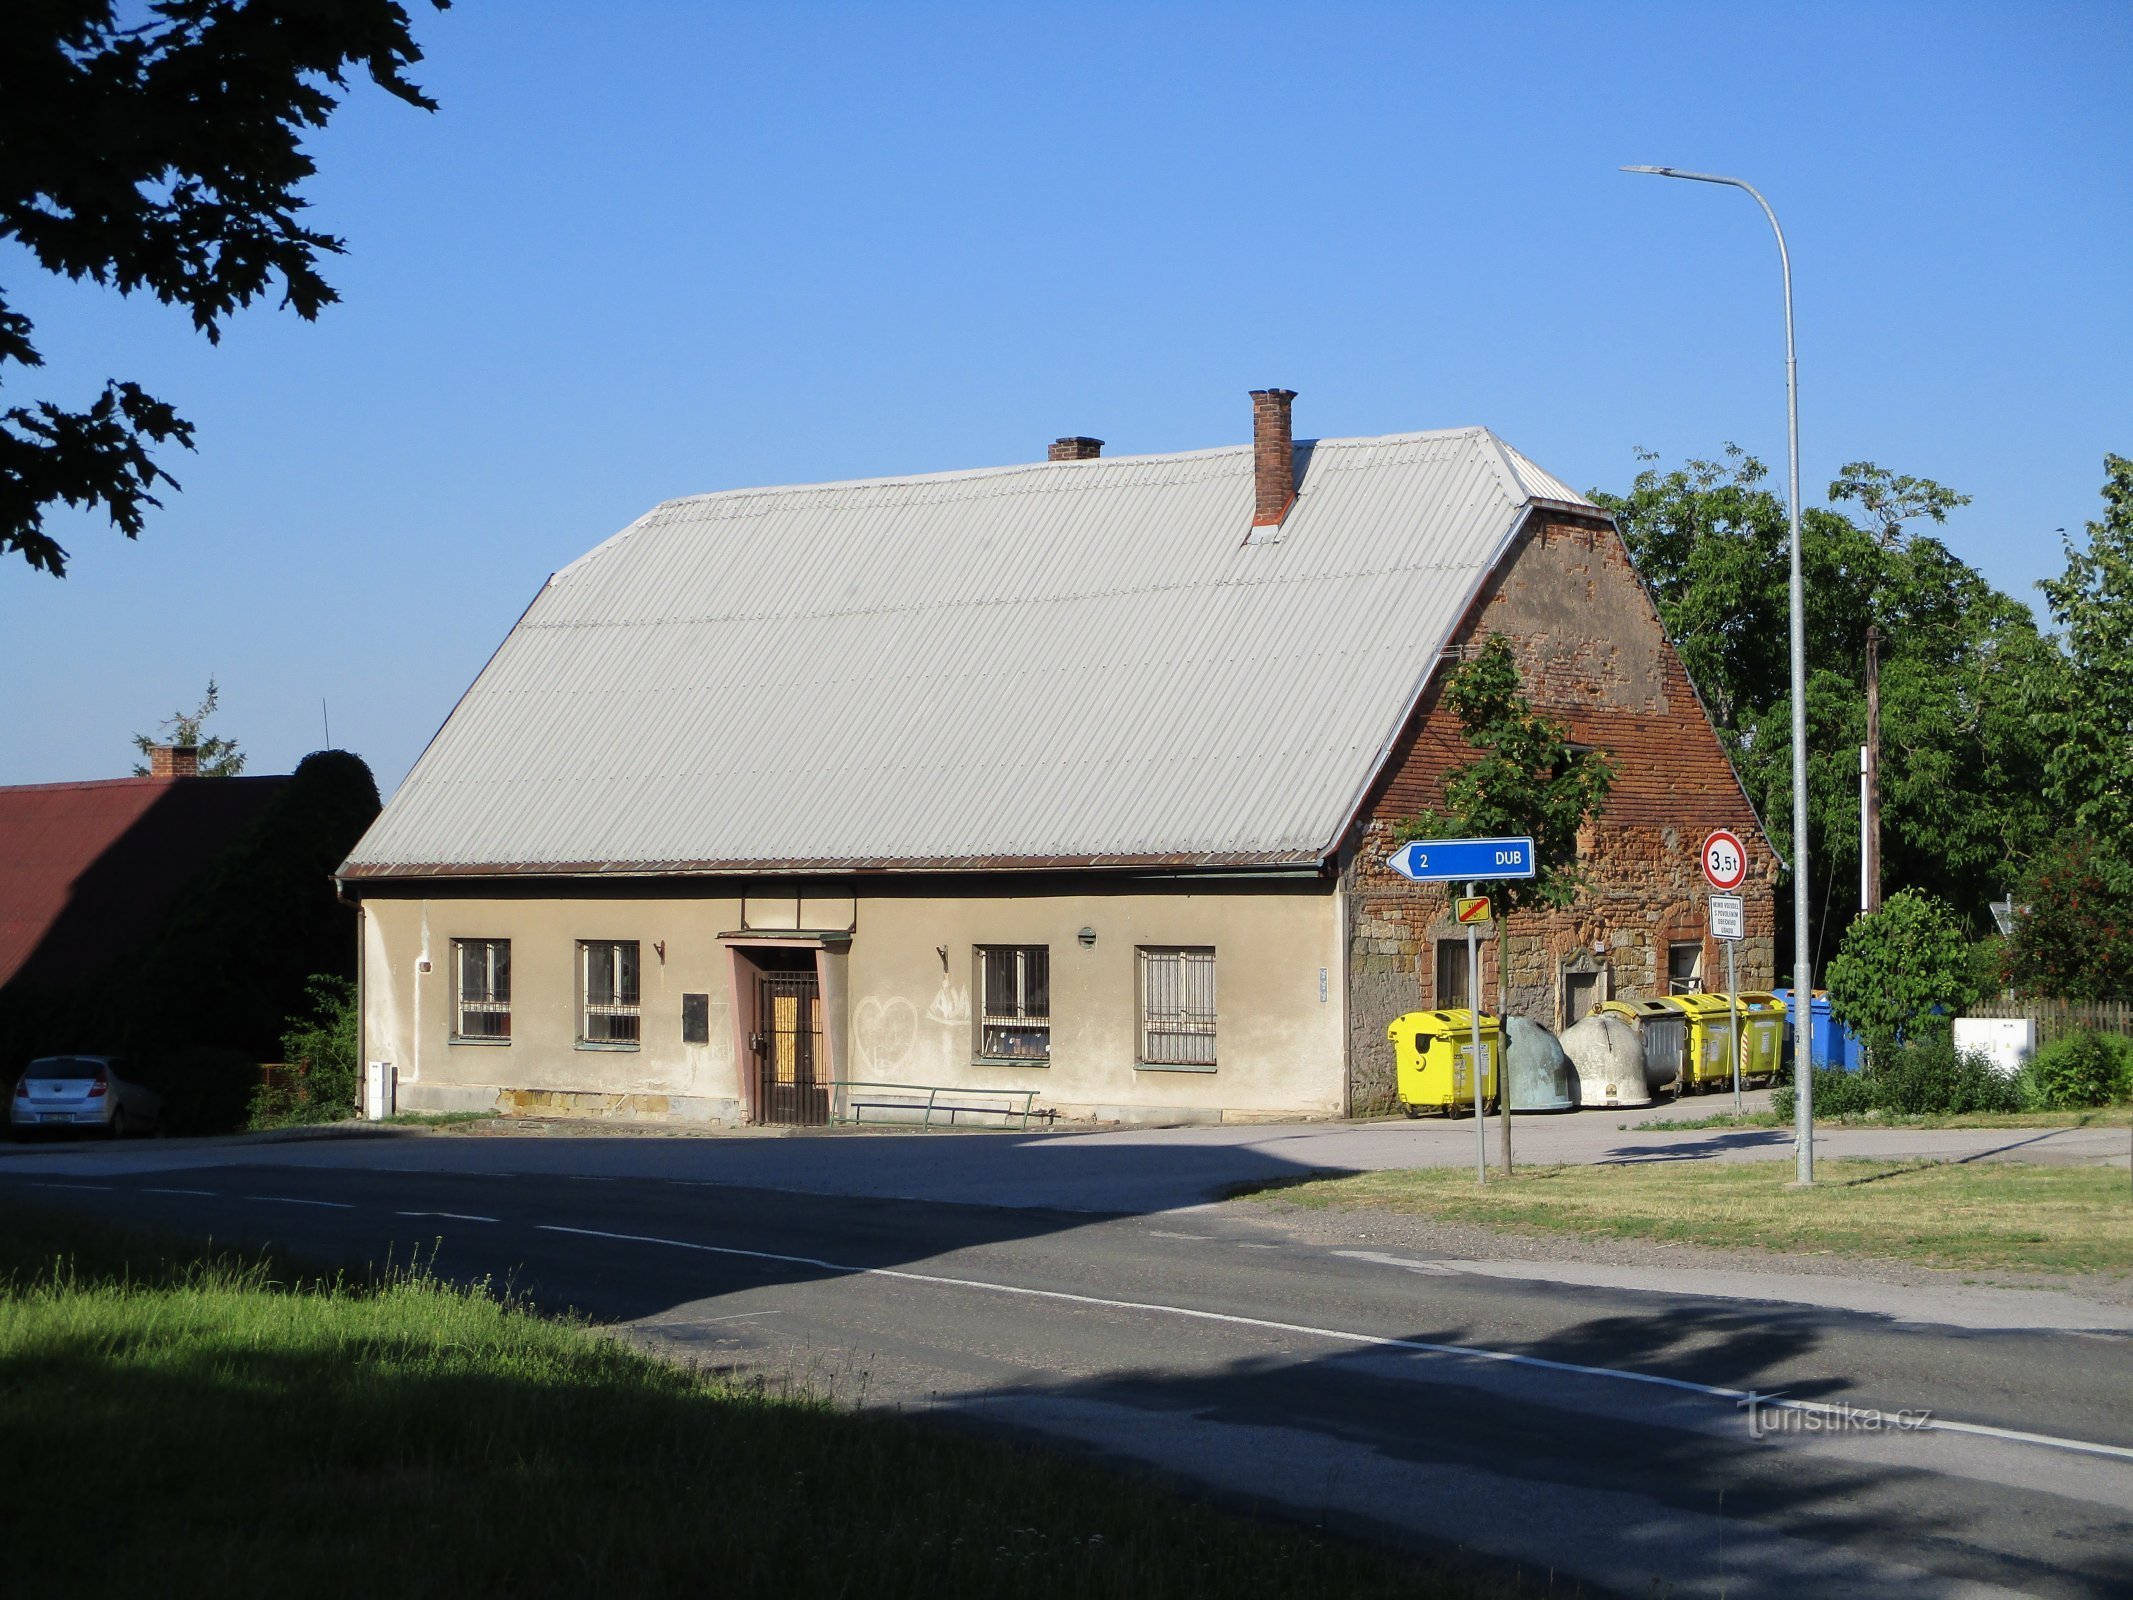 Stračov nr. 18 (29.6.2019 juni XNUMX)